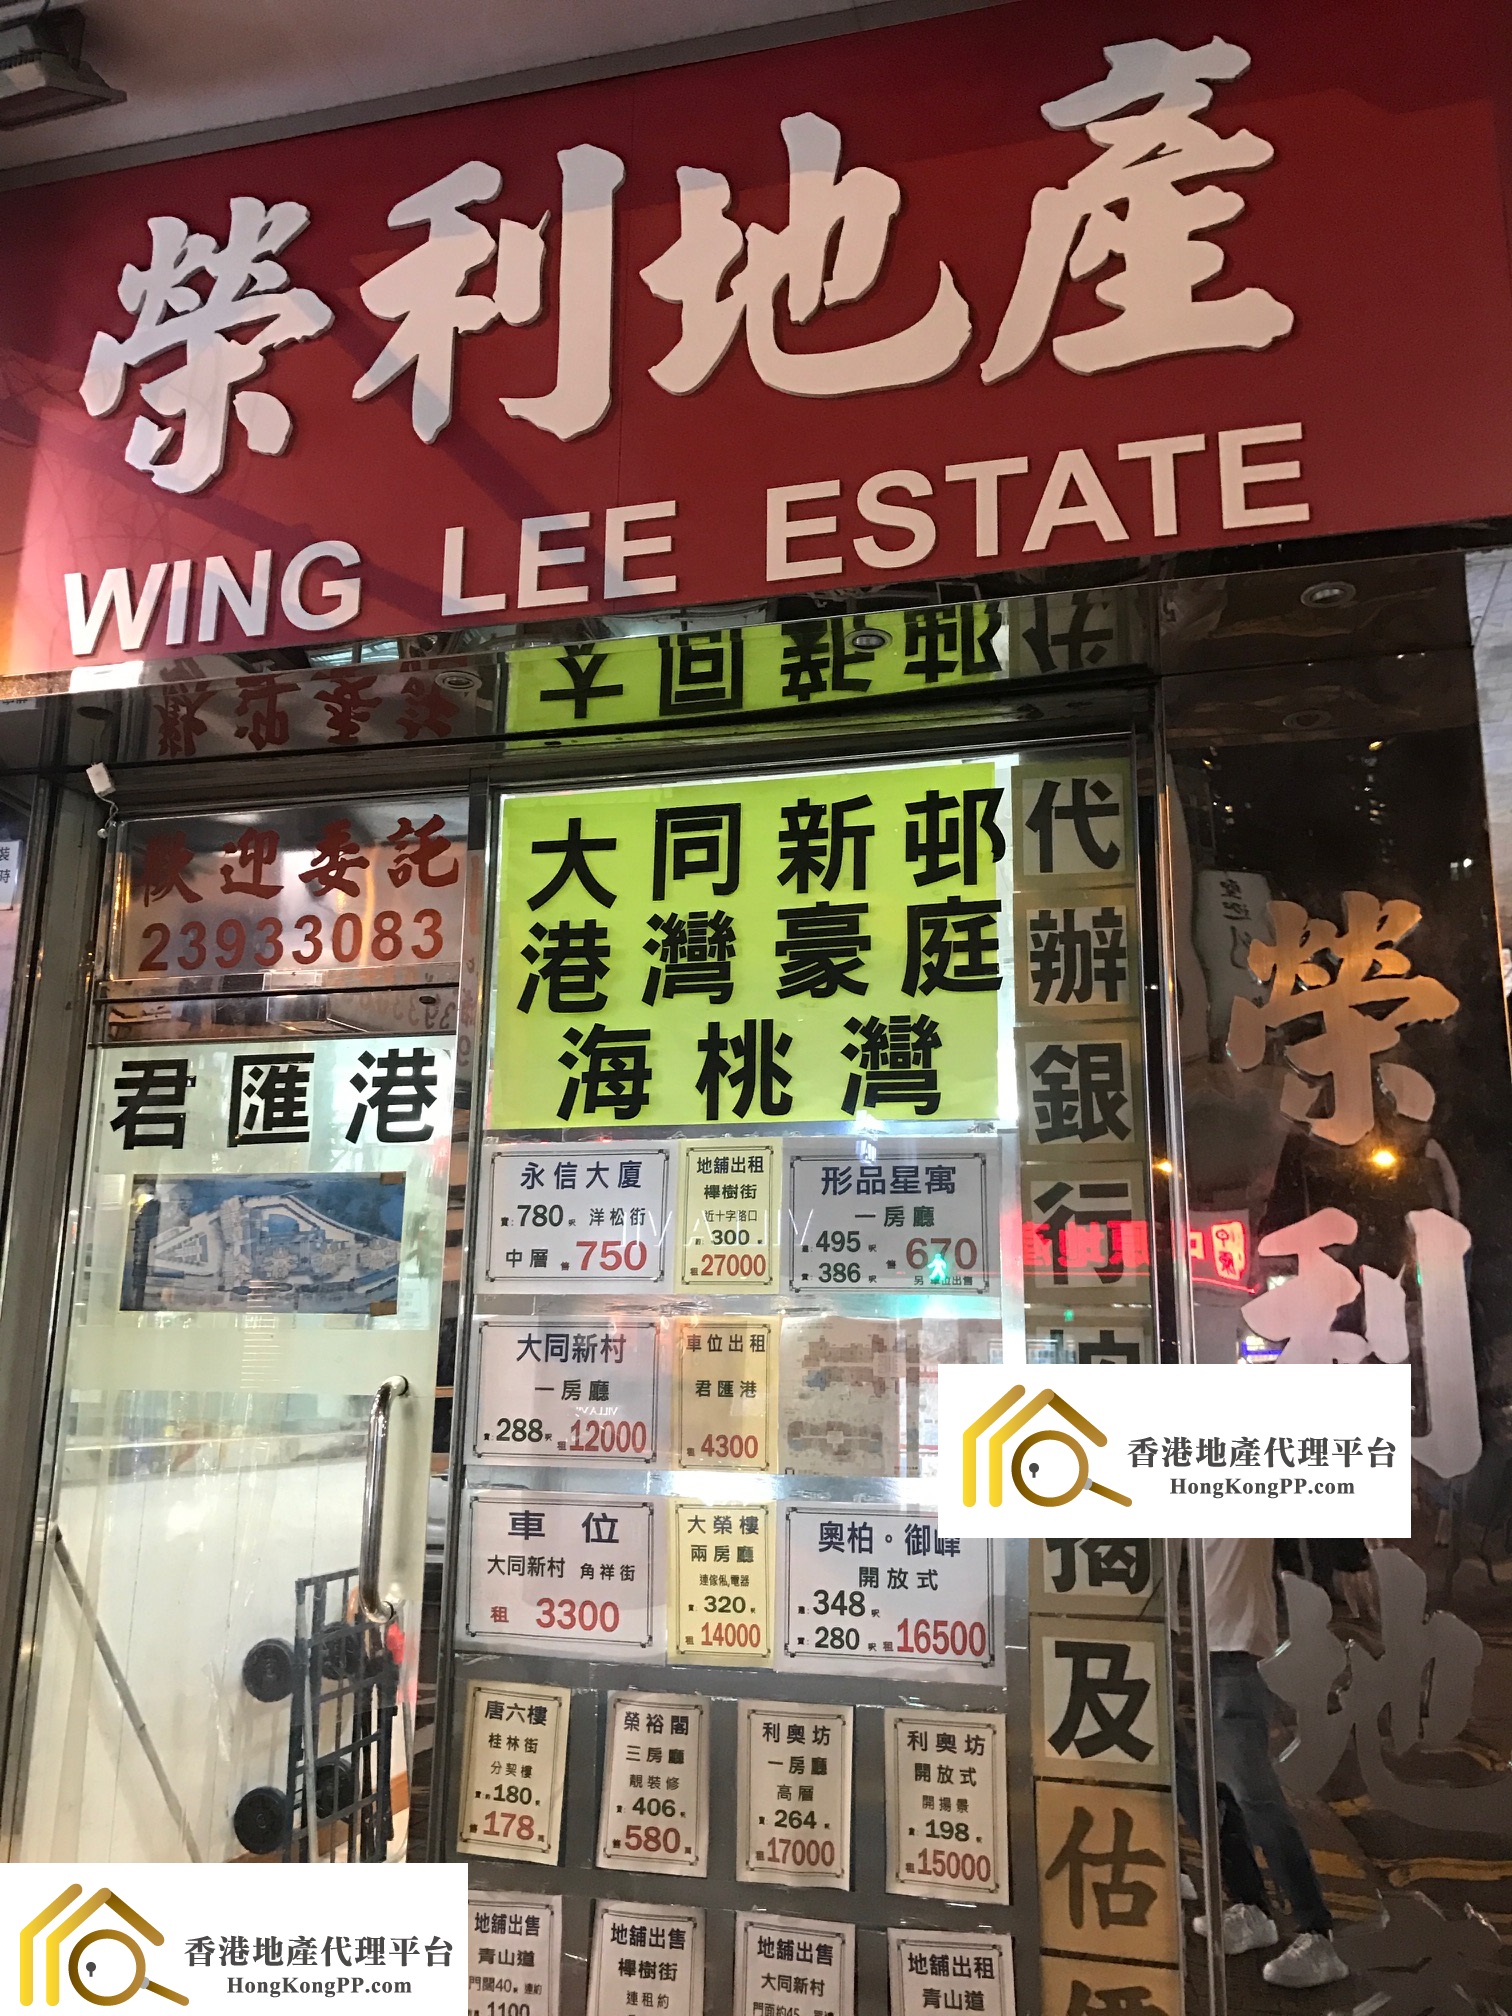 商舖地產代理: 榮利地產 Wing Lee Estate